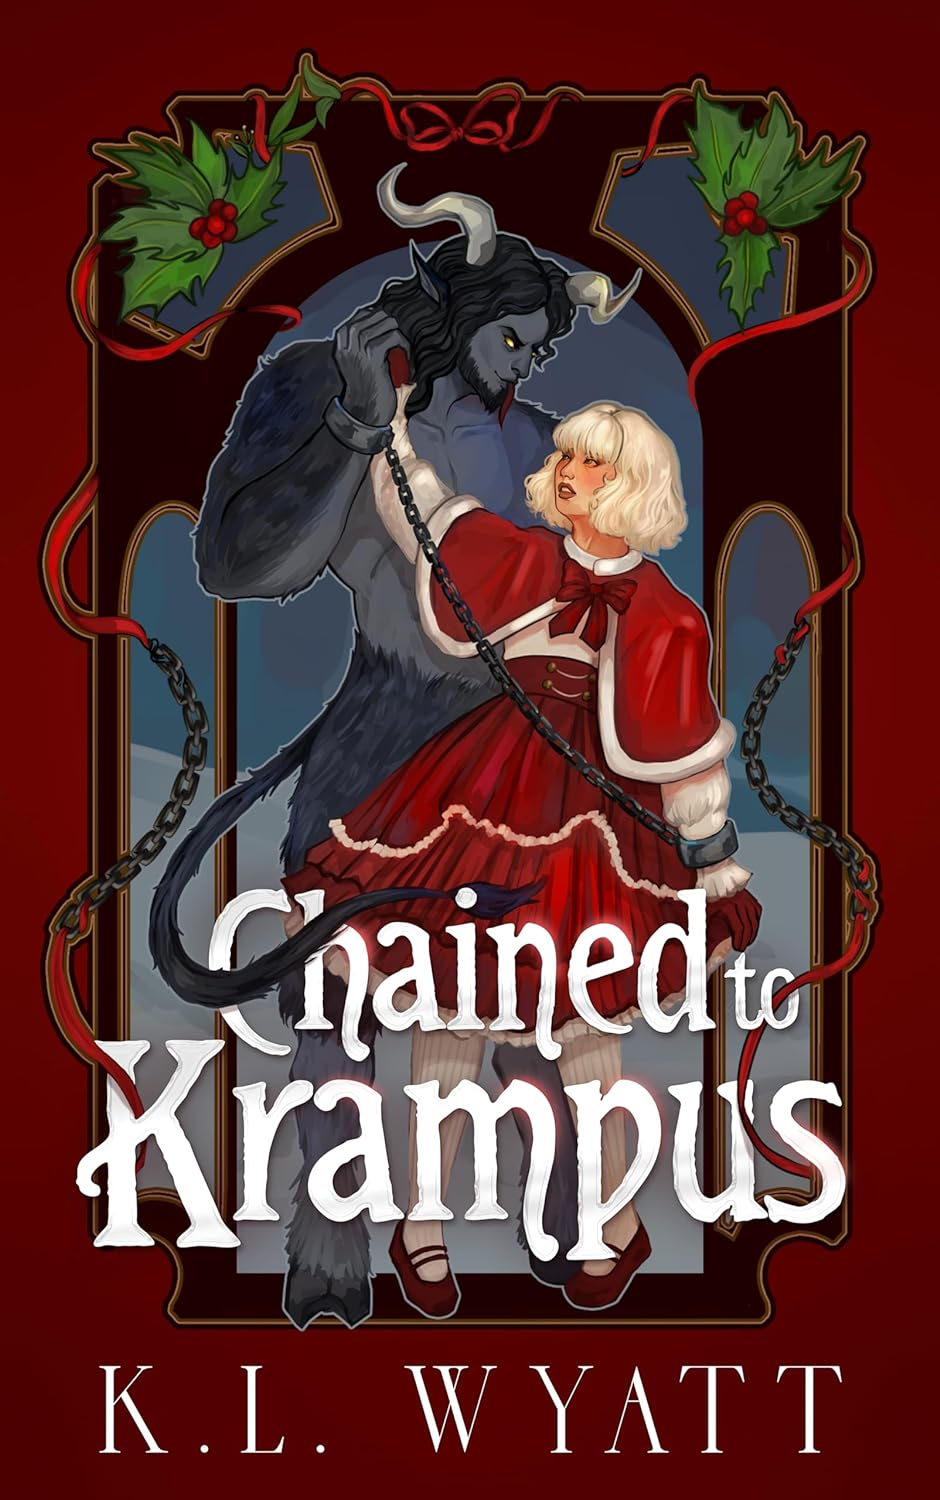 Chained to Krampus by K.L. Wyatt